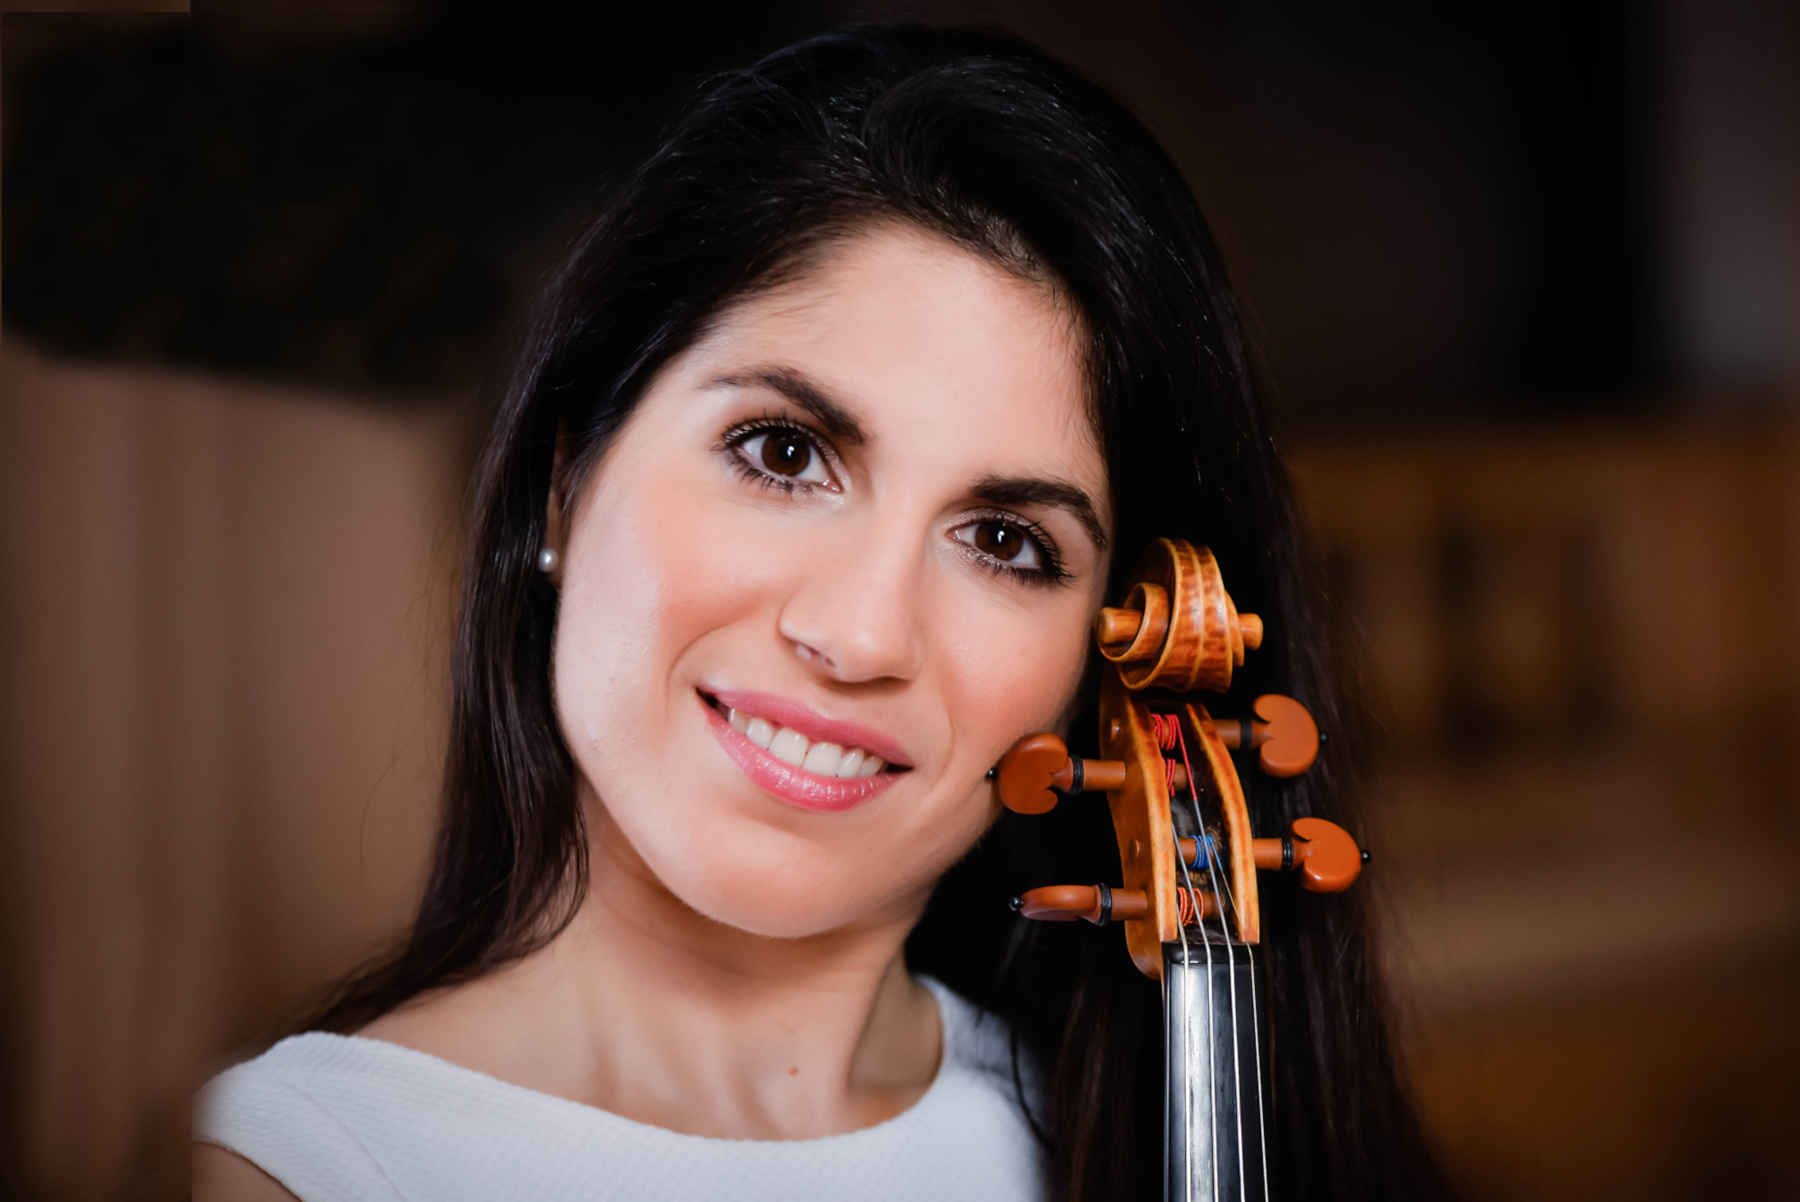 Imparare a suonare il violino – 20 domande a Aloisia Dauer